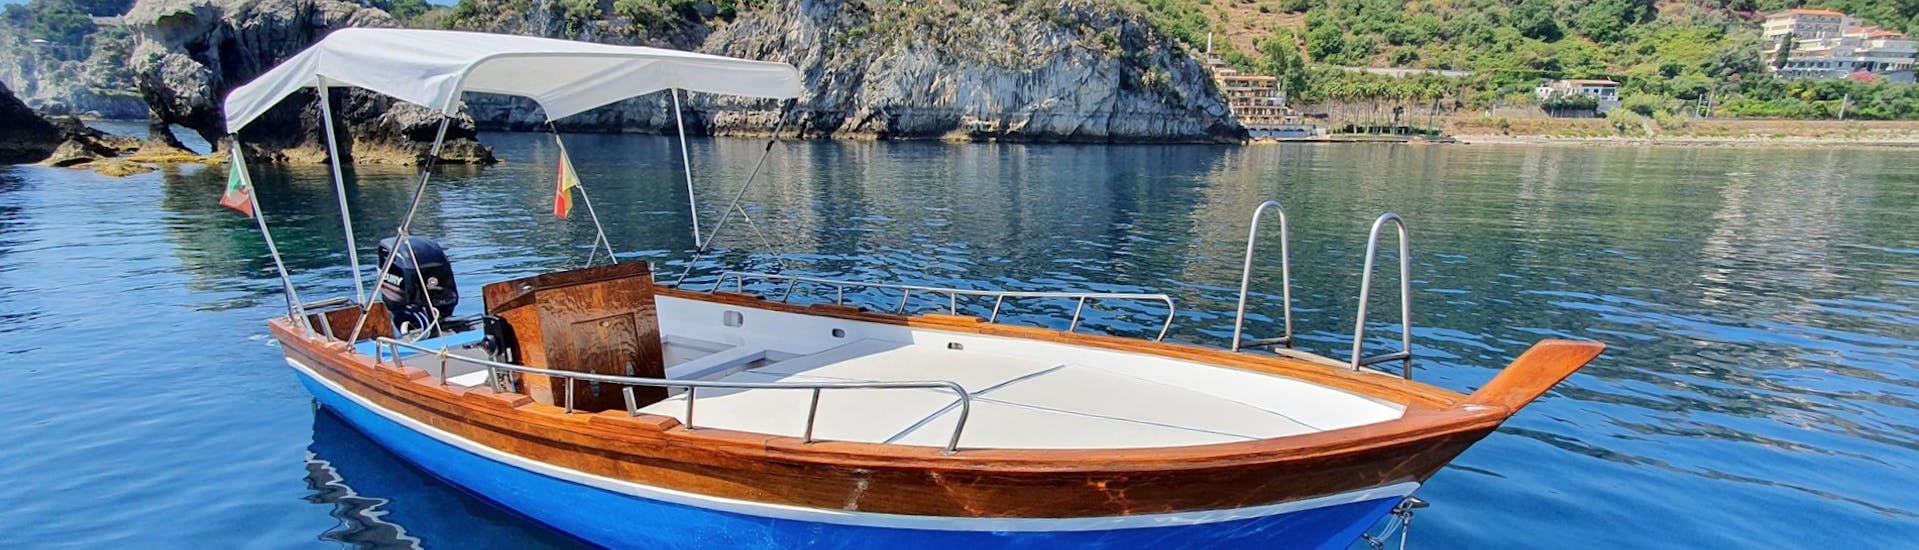 Imagen del barco utilizado para el paseo por la costa de Taormina, con esnórquel, con Boat Experience Taormina.